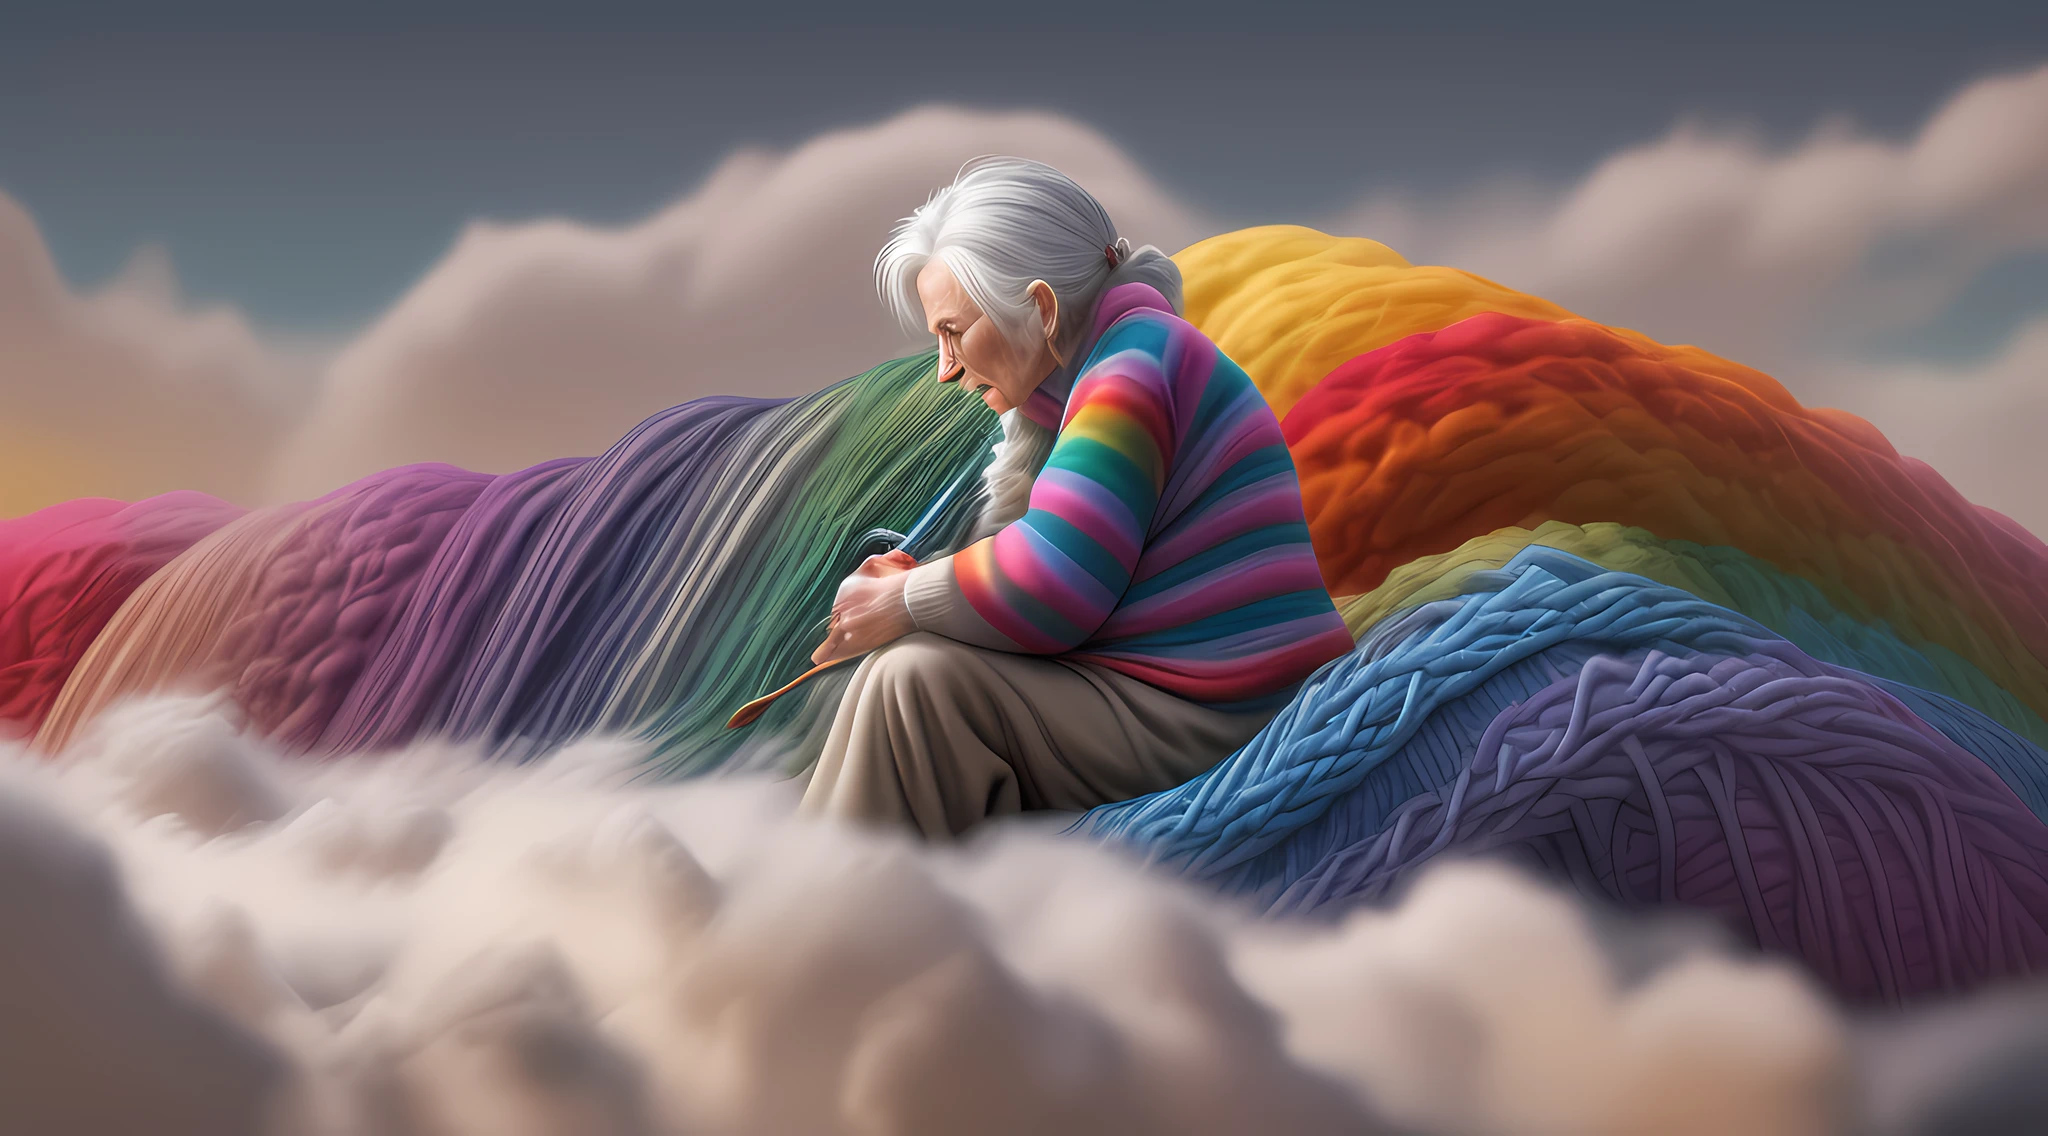 細部までこだわった, 最高品質, 16k, [超詳細], 傑作, 最高品質, dynamic のgle, 超ワイドショット, 生, 写実的な, fのtasy art, 写実的な芸術, a picture of a old womの sitting in heaven knitting the rainbow, の (old humの womの: 1.2) , ダイナミックヘア, ダイナミックな服, 雲の上に座って虹を編む, フルカラー, (完璧なスペクトル: 1.3),( vibrのt work: 1.4)  vibrのt shades of red, orのge, 黄色, 緑, 青, インジゴ, 編み物のバイオレット, 完璧な色, the rainbow falls into the sky from the old womの who knits, 16k, 超詳細, 傑作, 最高品質, 超詳細, 全身, 超ワイドショット, 写実的な, 3Dレンダリング